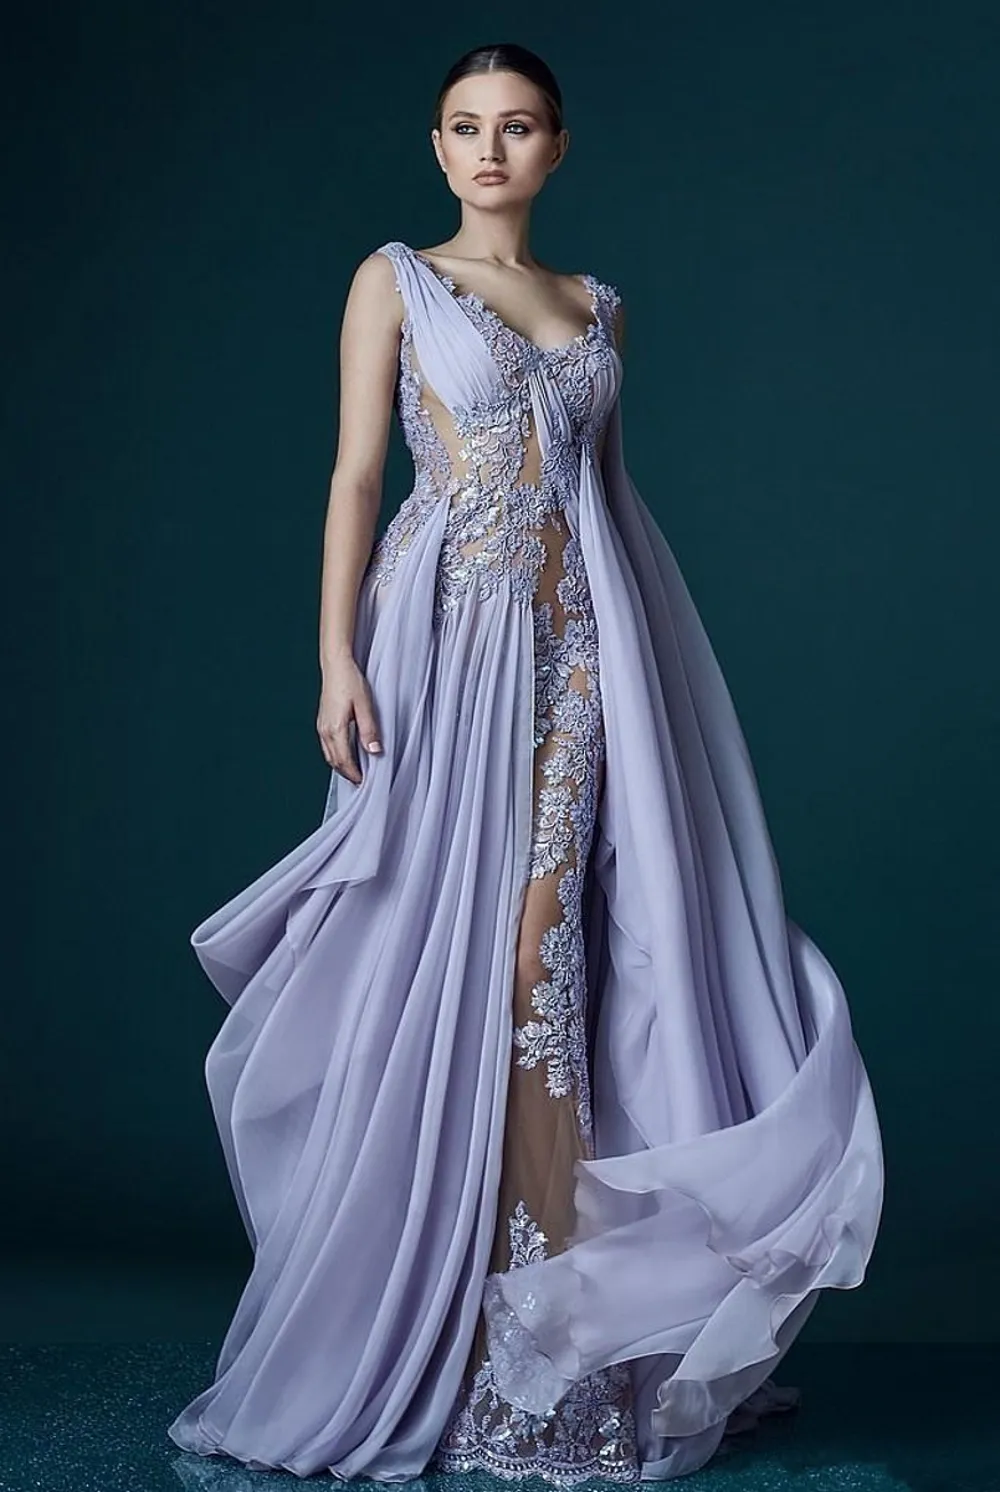 Tiefer V-Ausschnitt Lavendel Abendkleider mit Verpackungs-Applikationen Sheer Backless Berühmtheits-Kleid Abendkleider Stunning Chiffon- langen Abendkleid